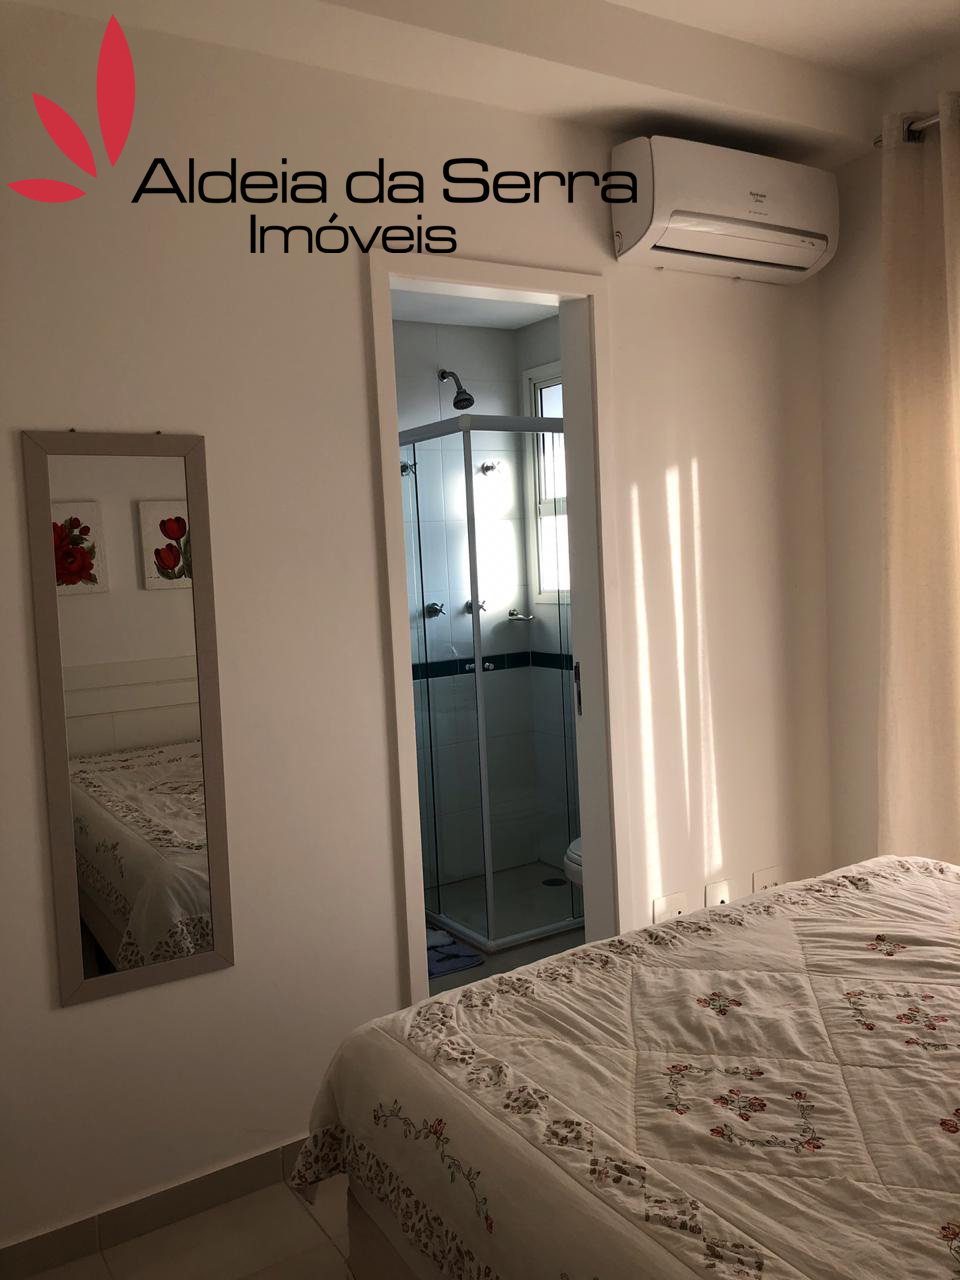 /admin/imoveis/fotos/IMG-20190806-WA0053 copy.jpg Aldeia da Serra Imoveis